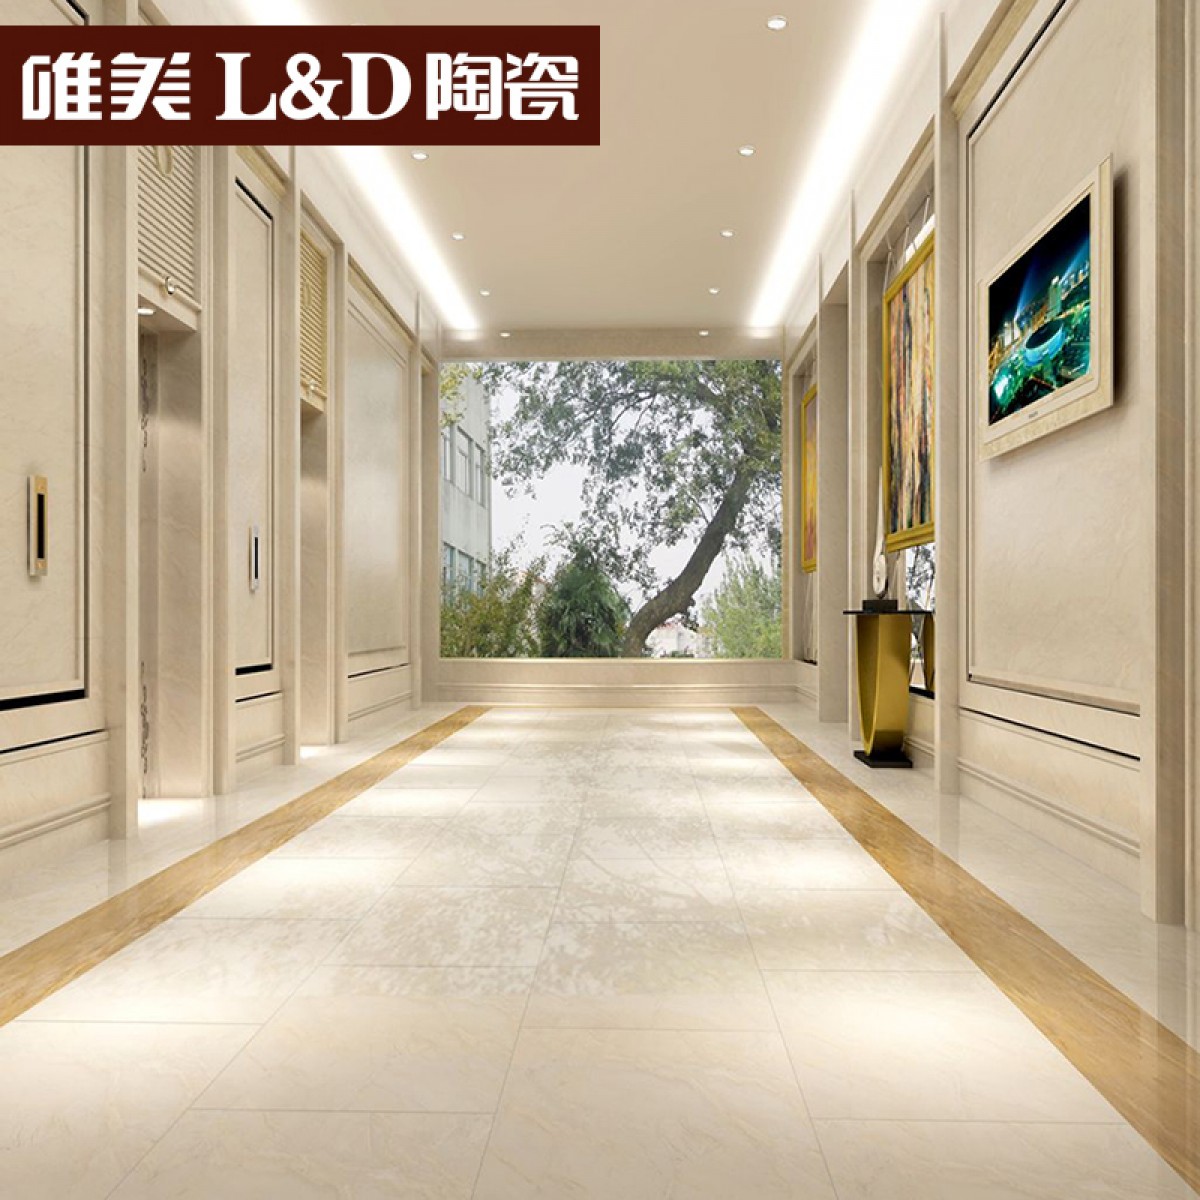 中山唯美L&D陶瓷ld瓷砖高清石系列全抛釉墙砖地板砖冰川岩